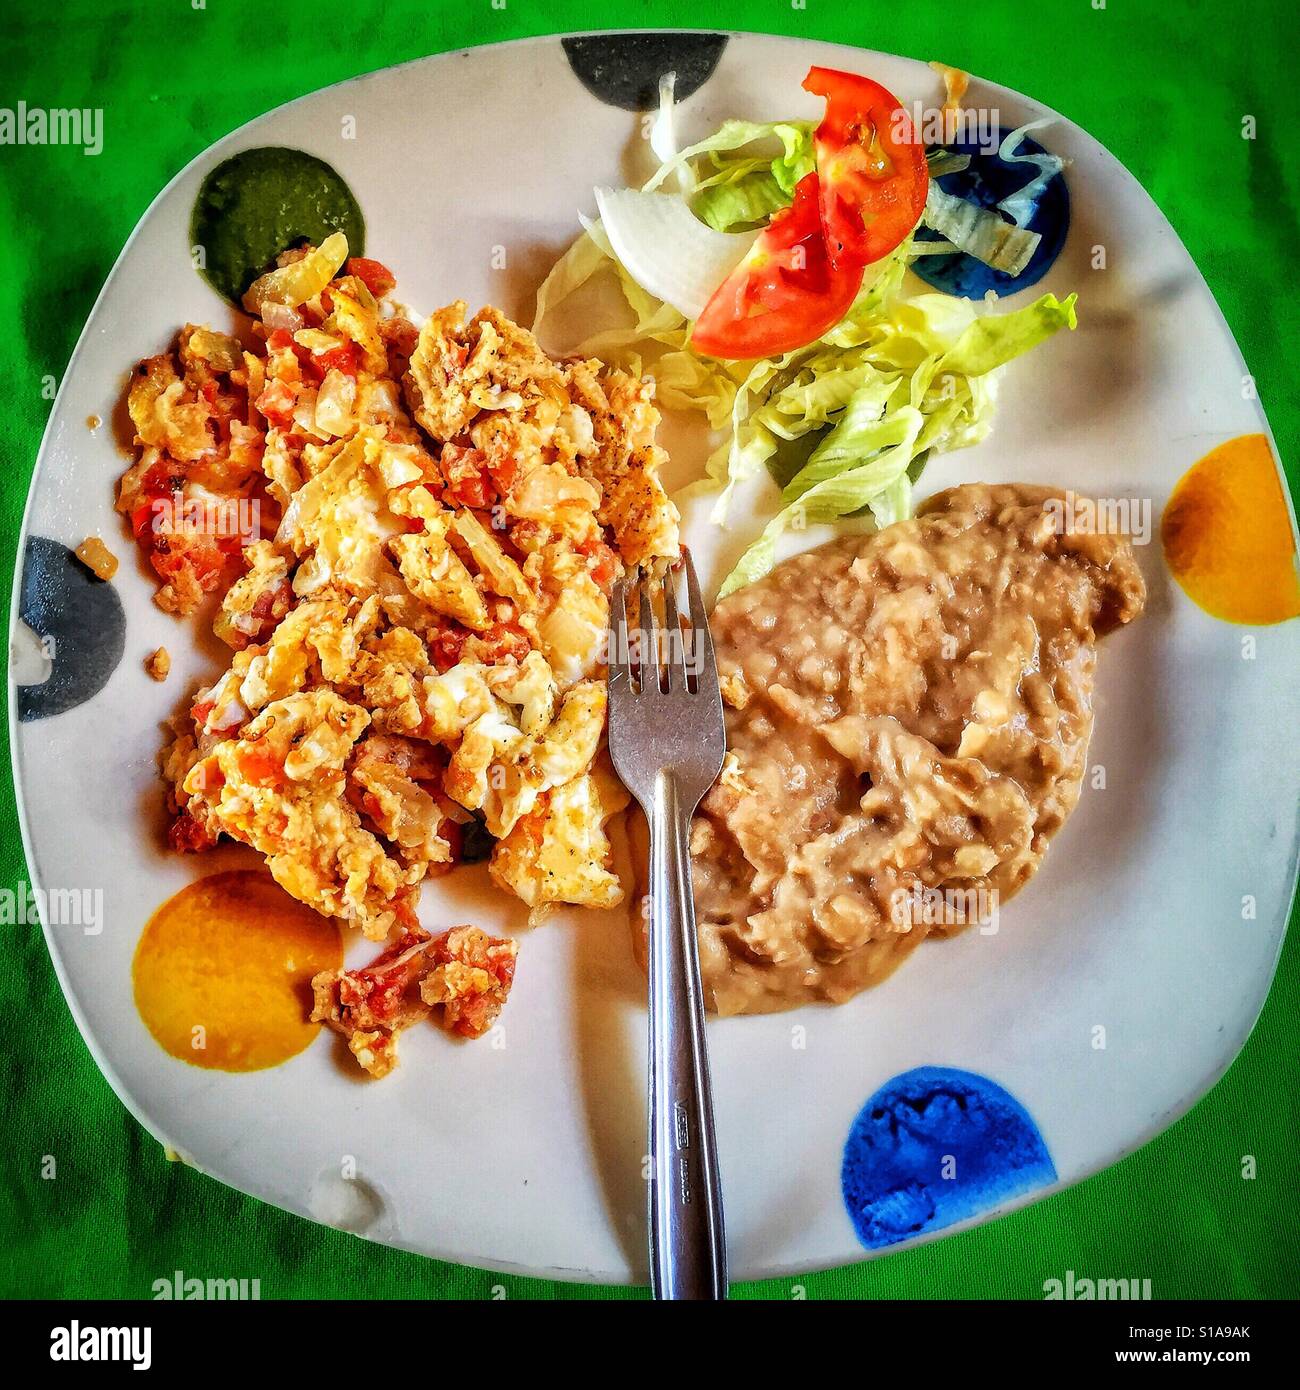 Une plaque colorée peinte avec pois géant est rempli d'un petit-déjeuner traditionnel mexicain de huevos Mexicanos, haricots, et une salade. Banque D'Images